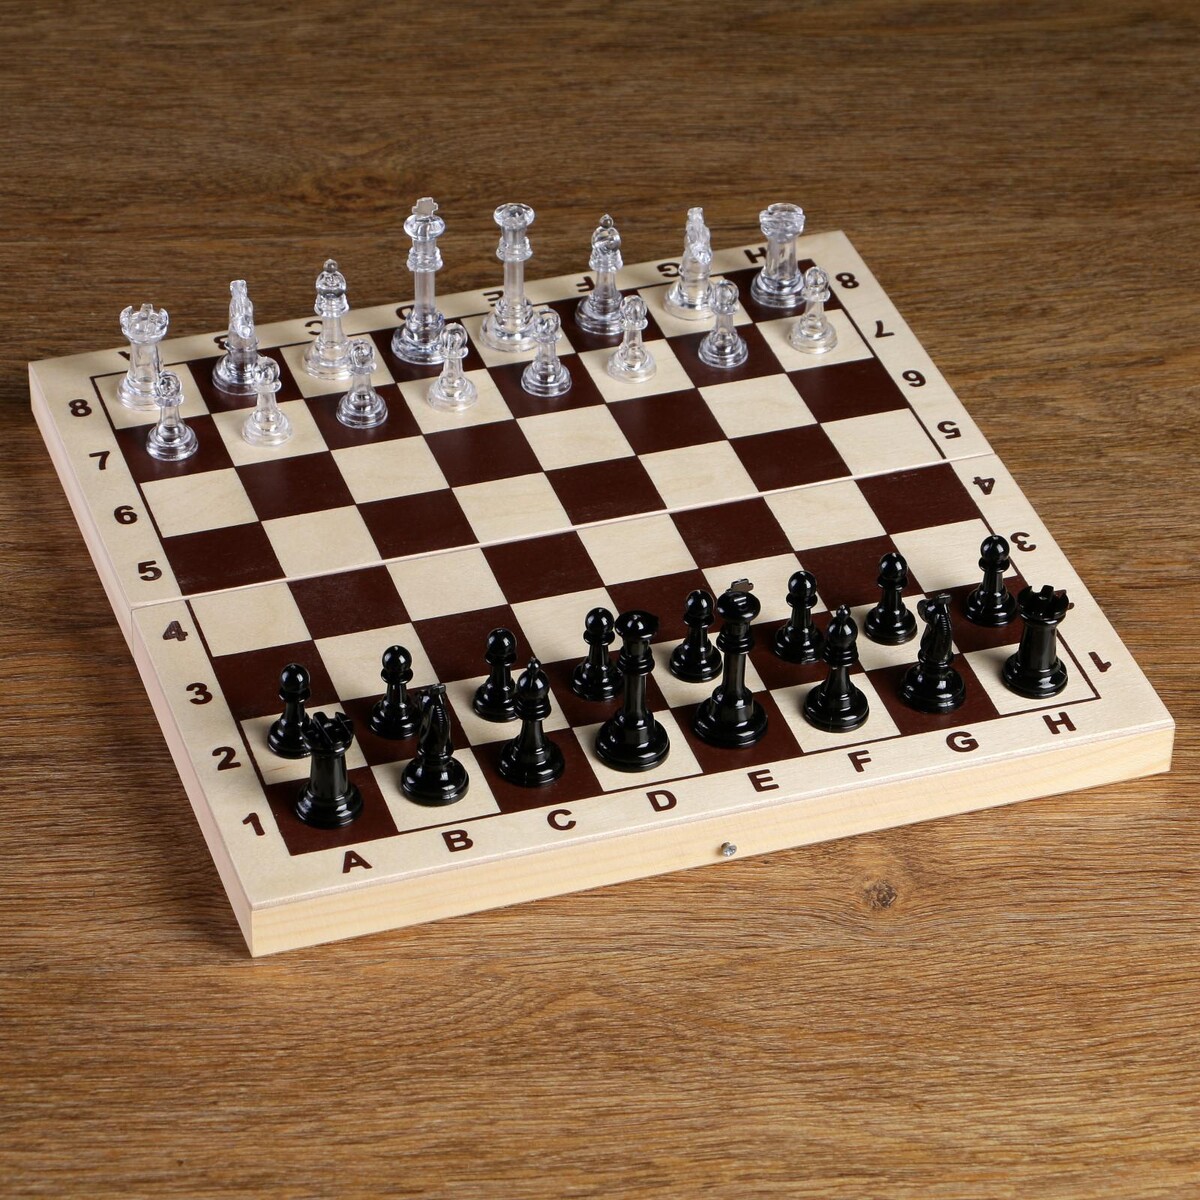 Шахматные фигуры, король h-5.8 см, пешка h-2.8 см лунная ведьма король паук